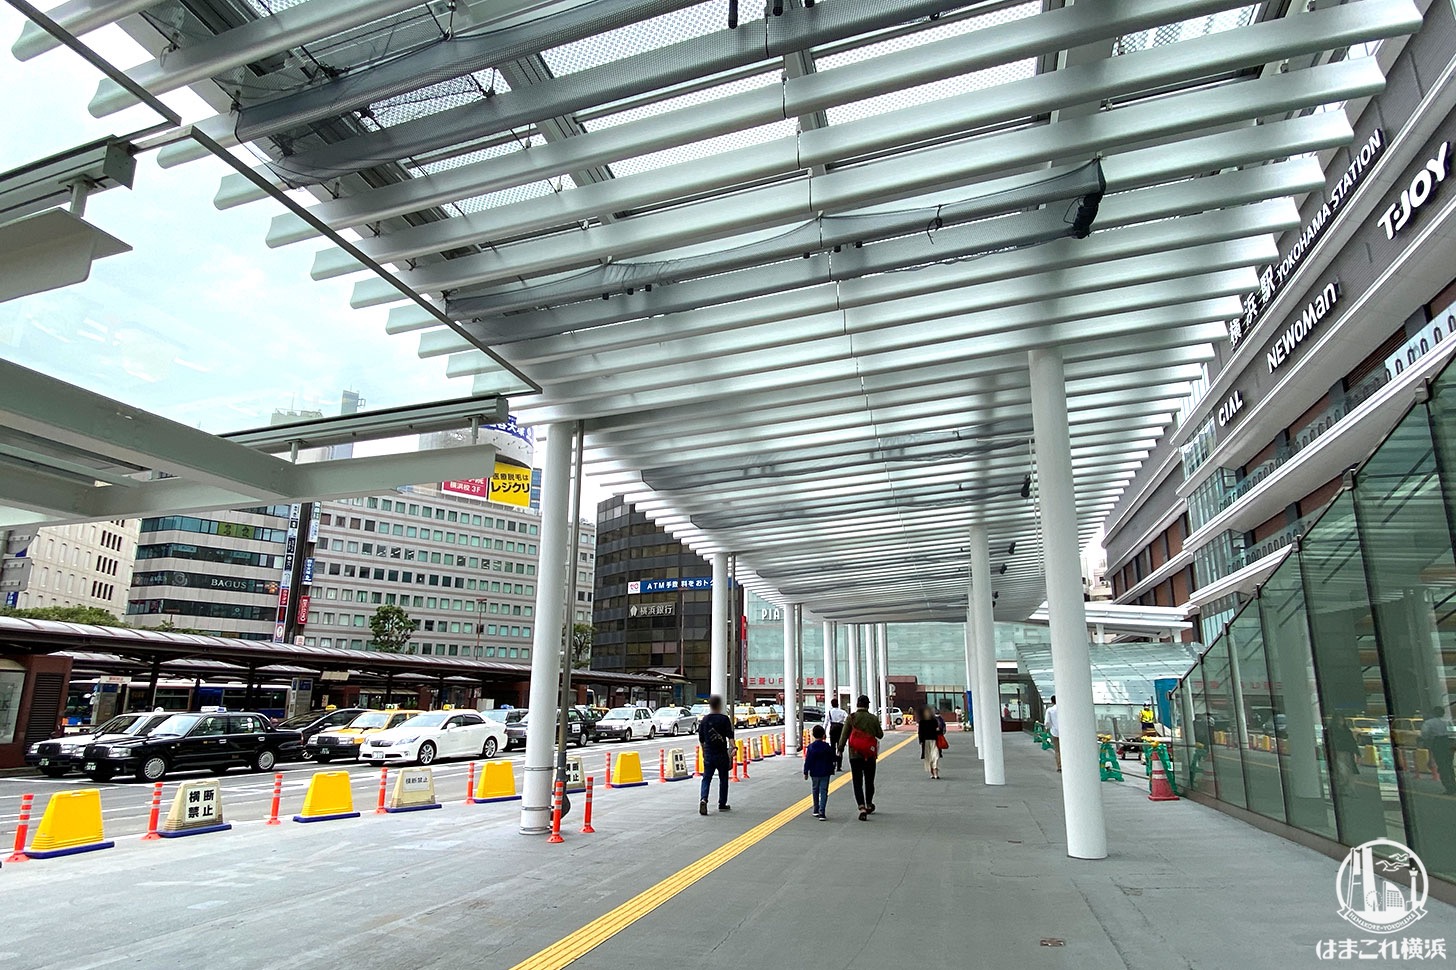 横浜駅西口 駅前広場の屋根が一部お披露目、通行可能に